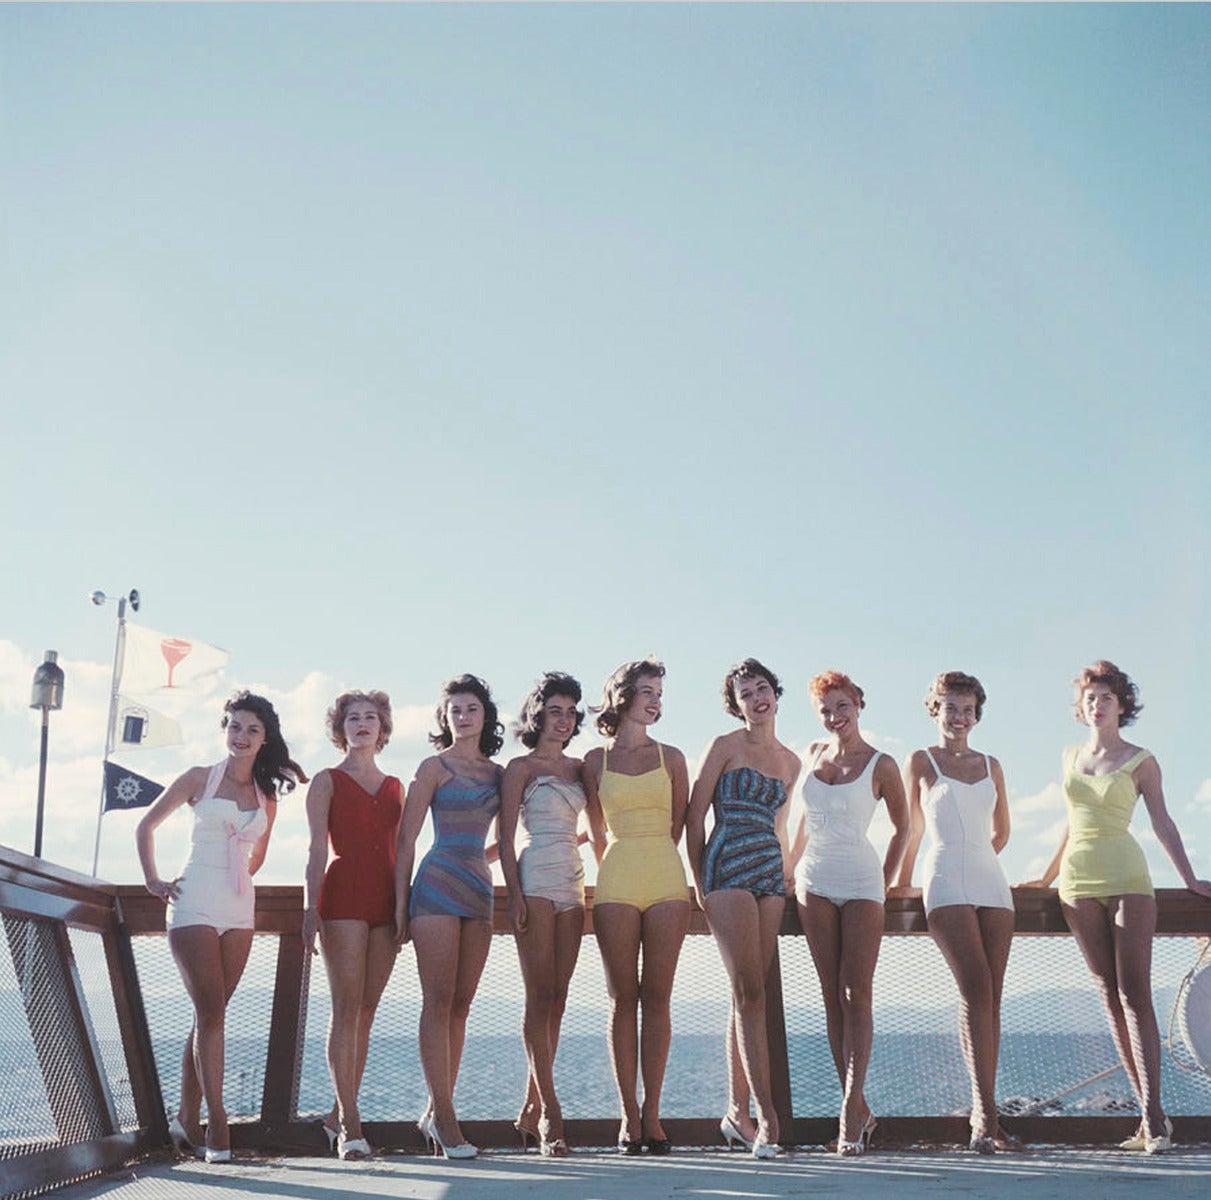 Légende : Un groupe de jeunes femmes en maillot de bain sur le côté Nevada du lac Tahoe, 1959. 

Slim Aarons a travaillé principalement pour des publications mondaines, prenant des photos des personnes riches et célèbres avant et après avoir été